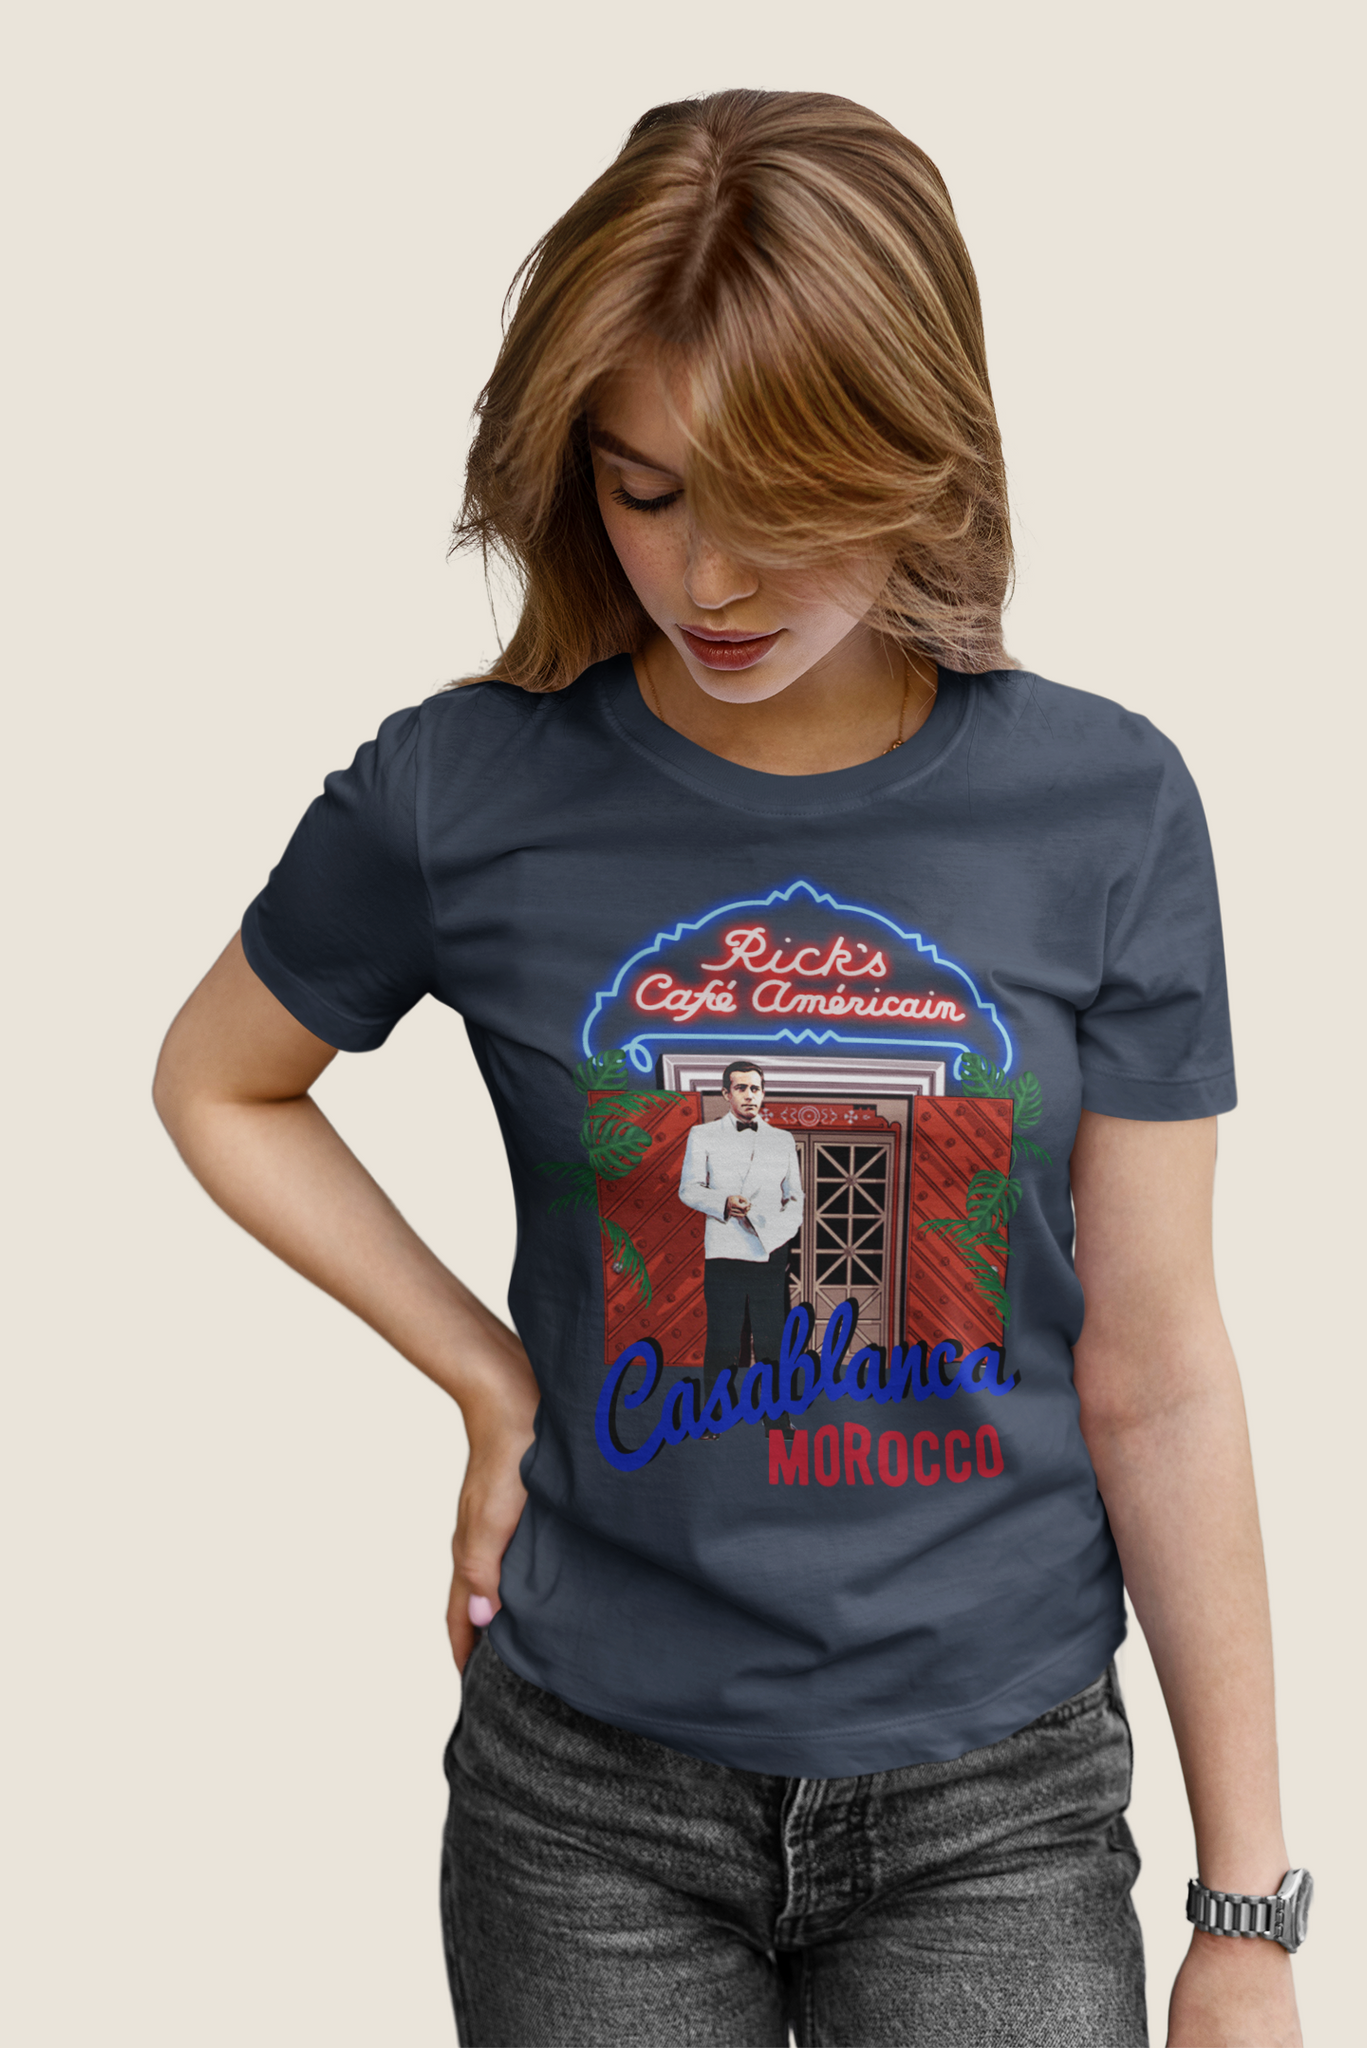 Casablanca T Shirt, Rick Blaine T Shirt, Casablanca Morocco Tshirt, Ricks Cafe Americain Shirt